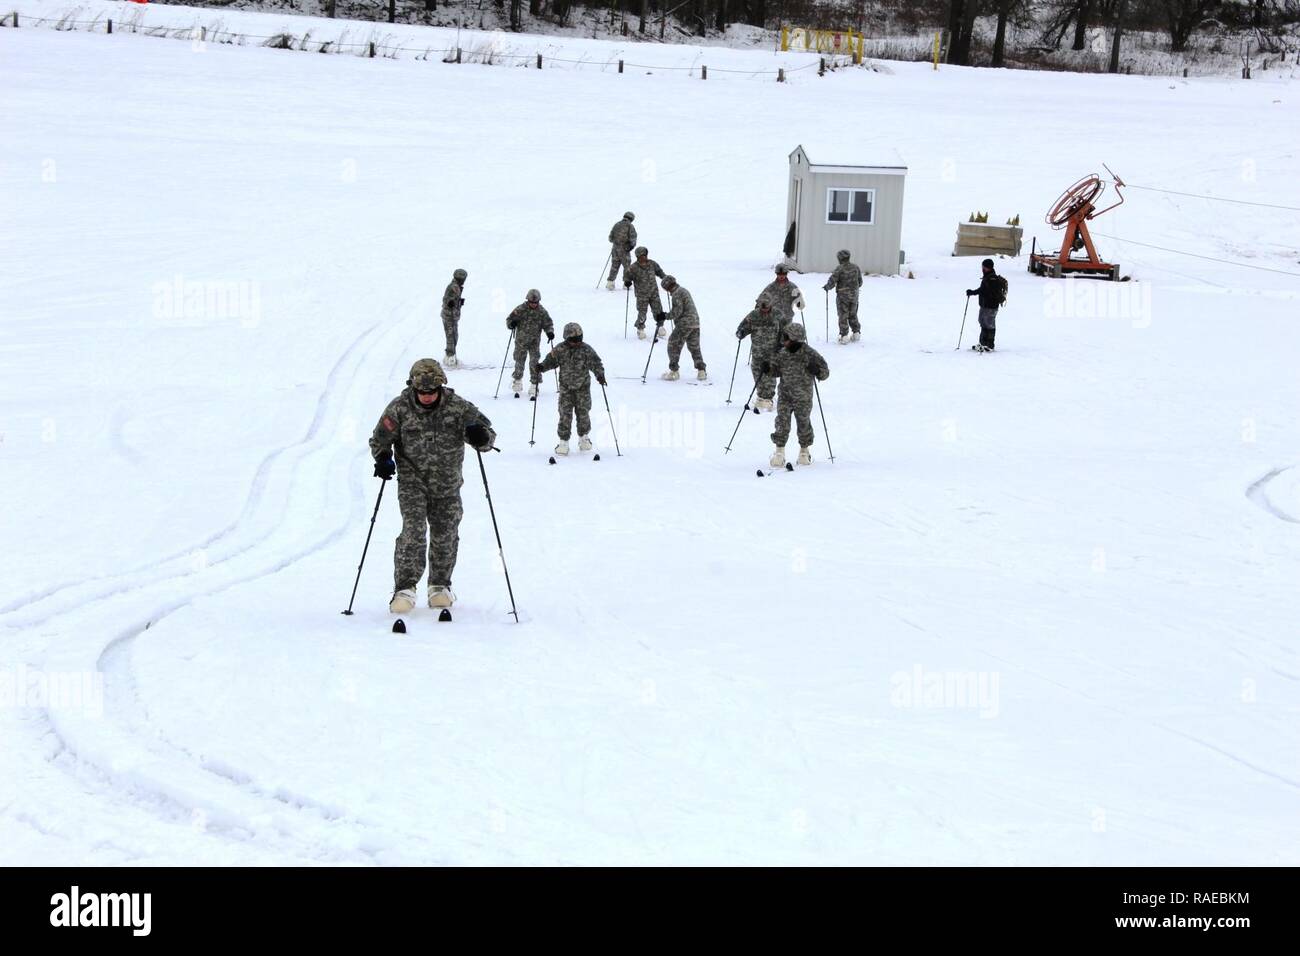 Los soldados con la 181ª Brigada de entrenamiento multifunción participar en una sesión de entrenamiento de esquí 27 de enero, 2017, en la zona de esquí de Whitetail Ridge como parte del curso de operaciones en frío en Fort McCoy. El curso de operaciones en frío es el primero de su tipo coordinado por la Dirección de planes, movilización, capacitación y seguridad, o DPTMS. Se incluyó la participación de 11 soldados con la 181ª y es impartido por dos instructores contratados en apoyo DPTMS. Foto de stock